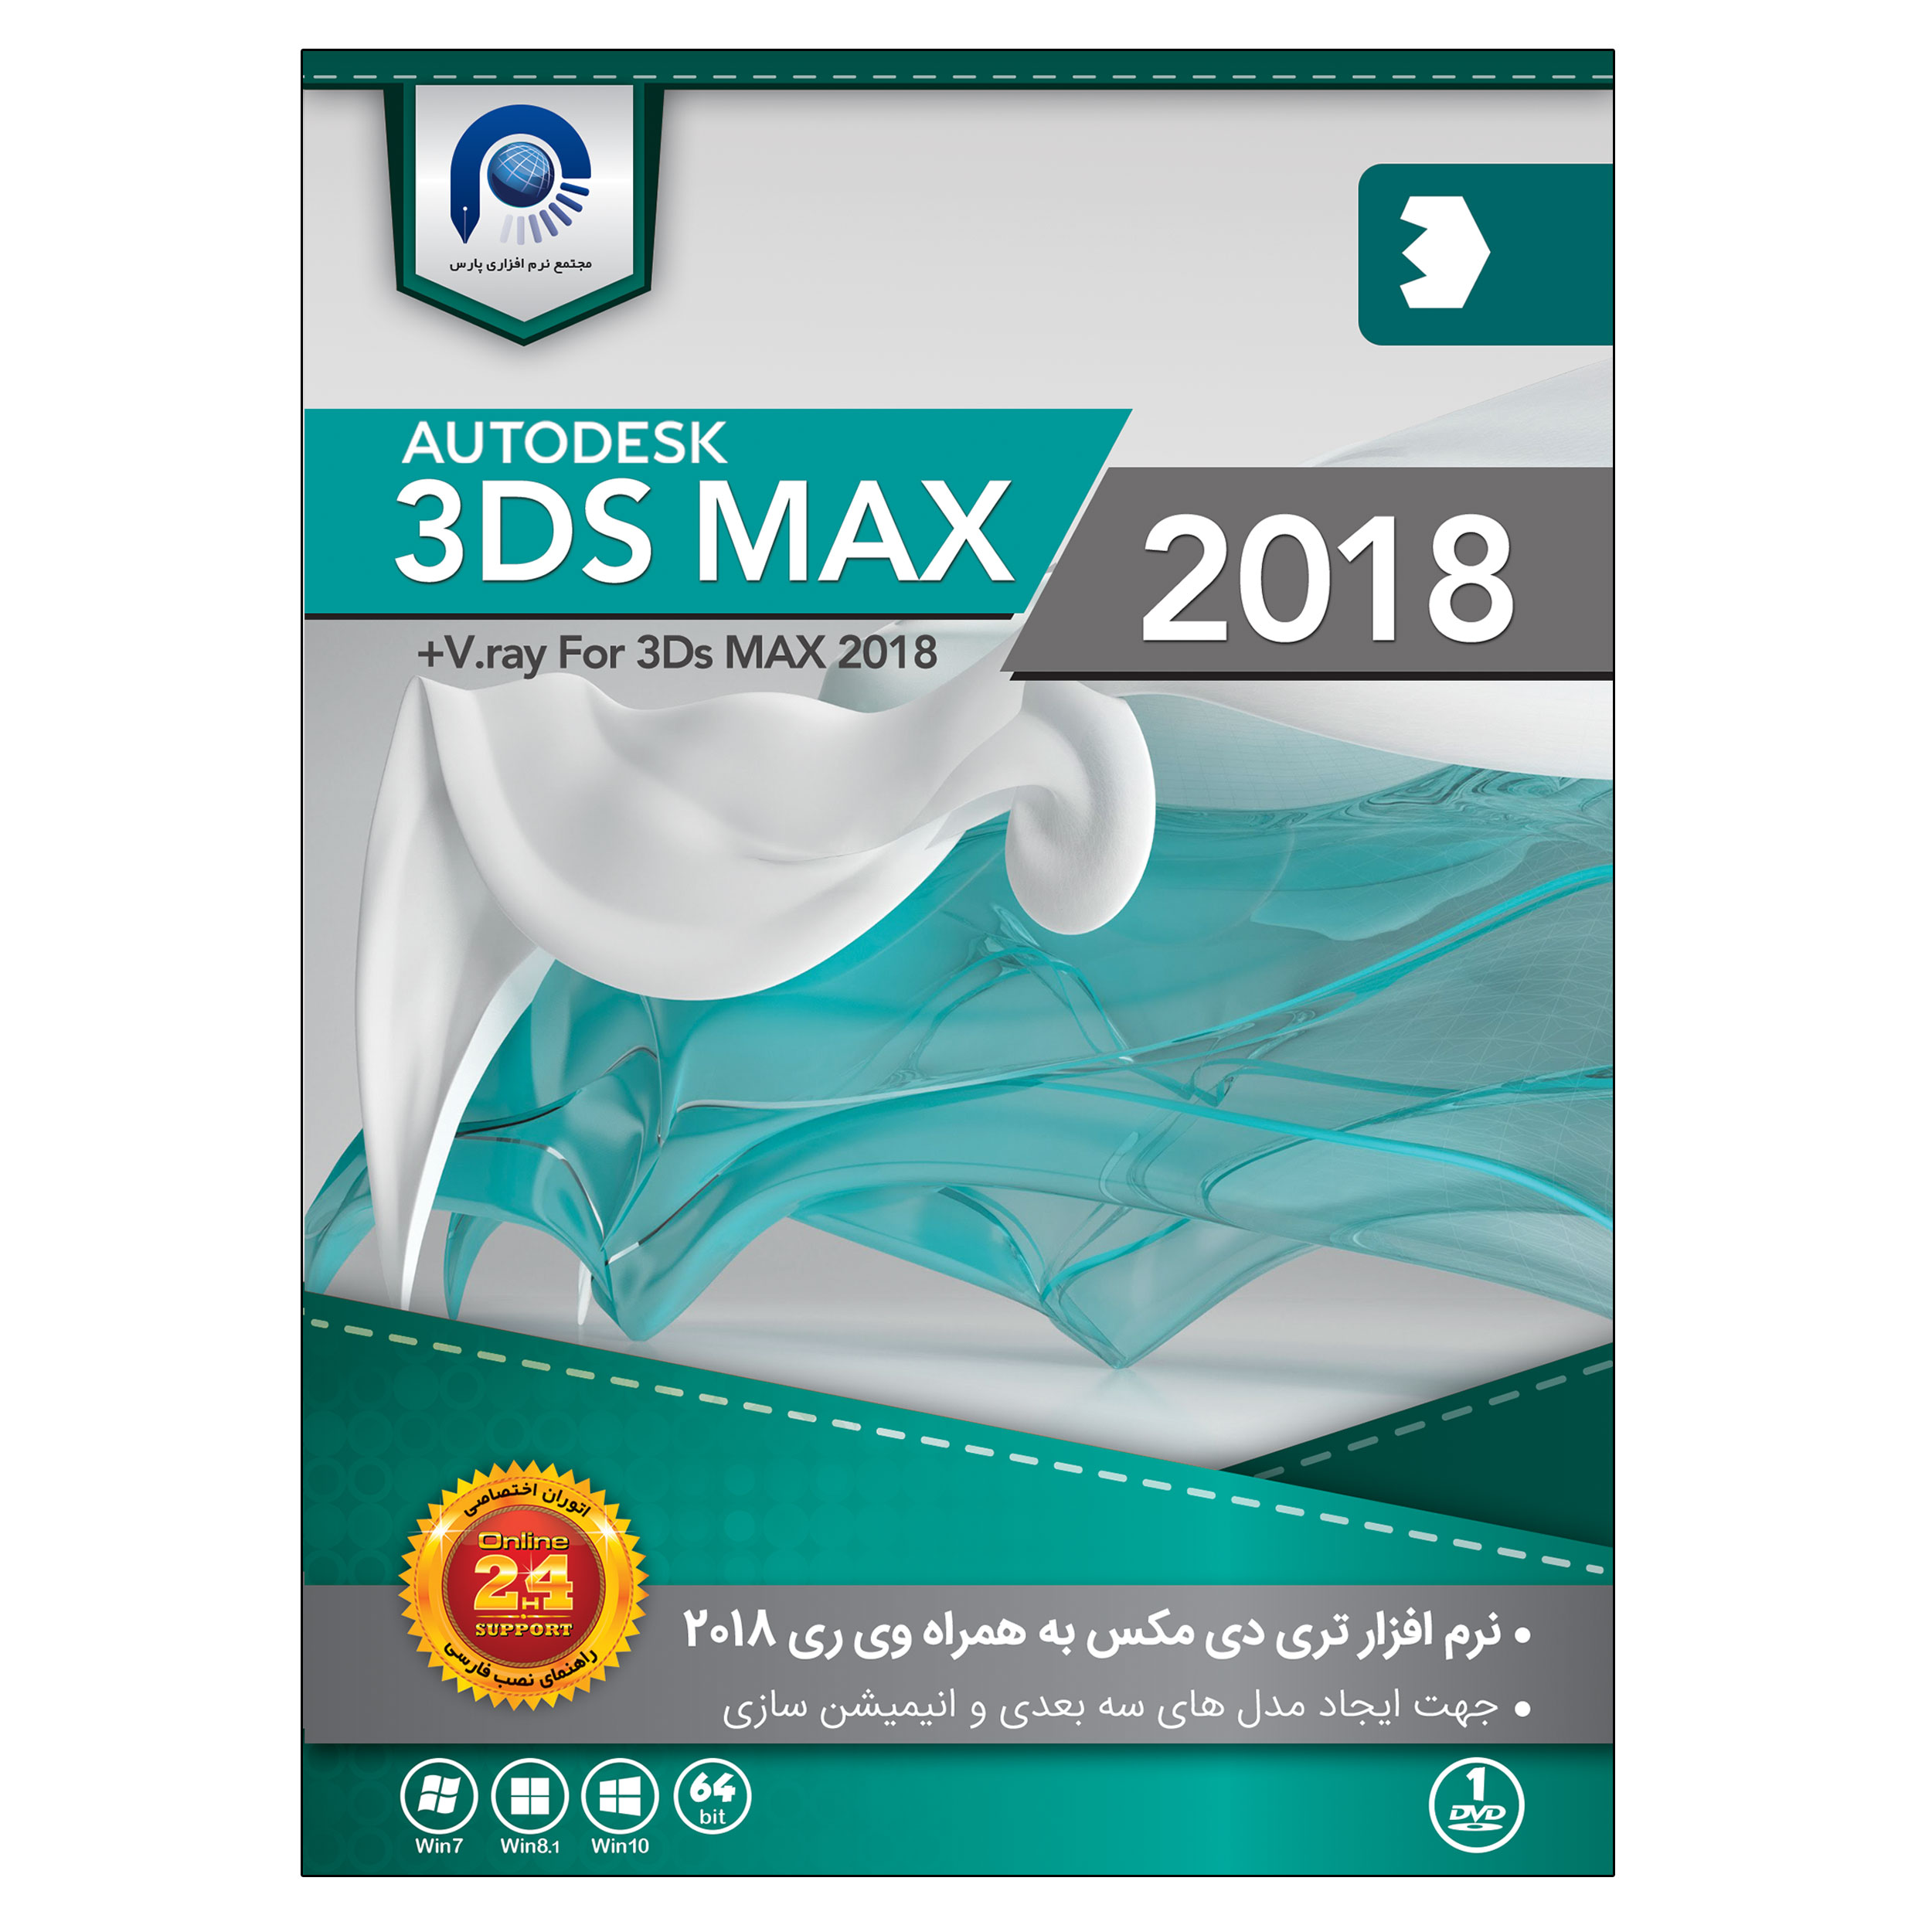 نرم افزار آموزش 3Ds MAX 2018 + Vray نشر پارس